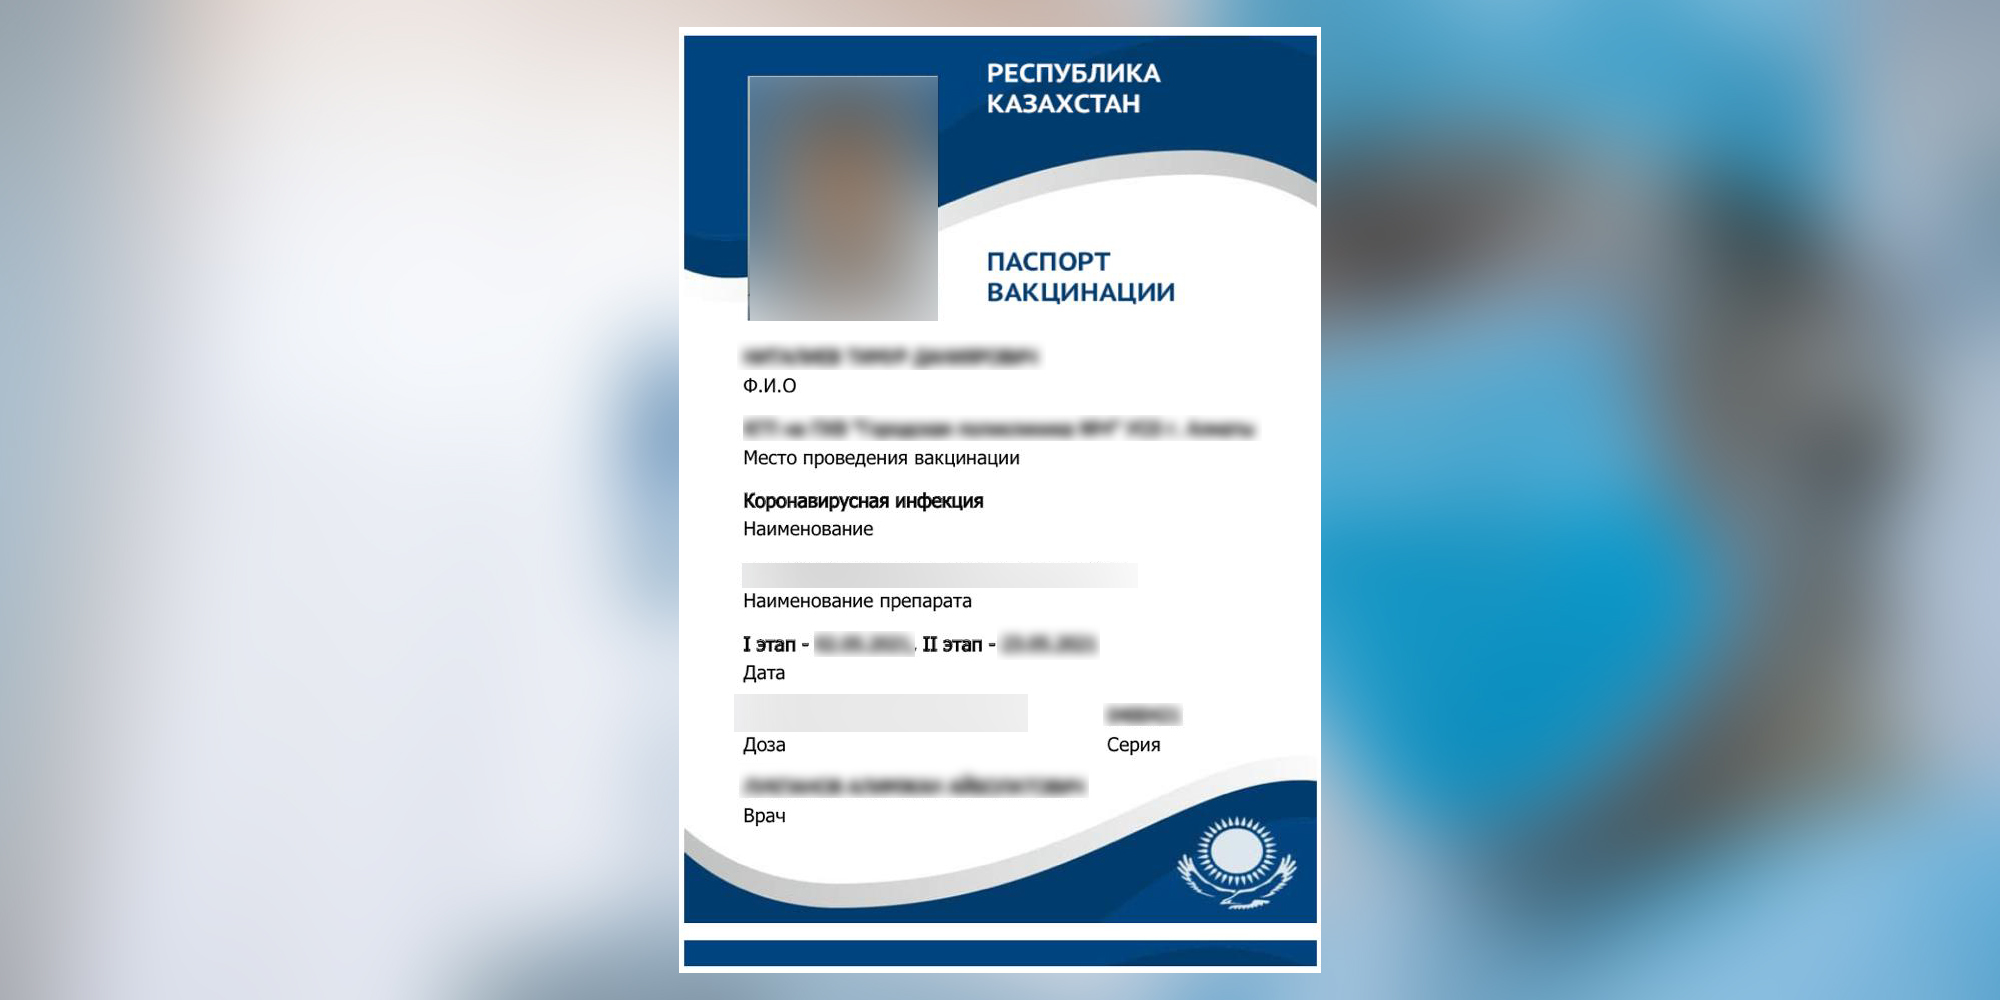 Восточноказахстанца поймали на использовании поддельного паспорта вакцинации